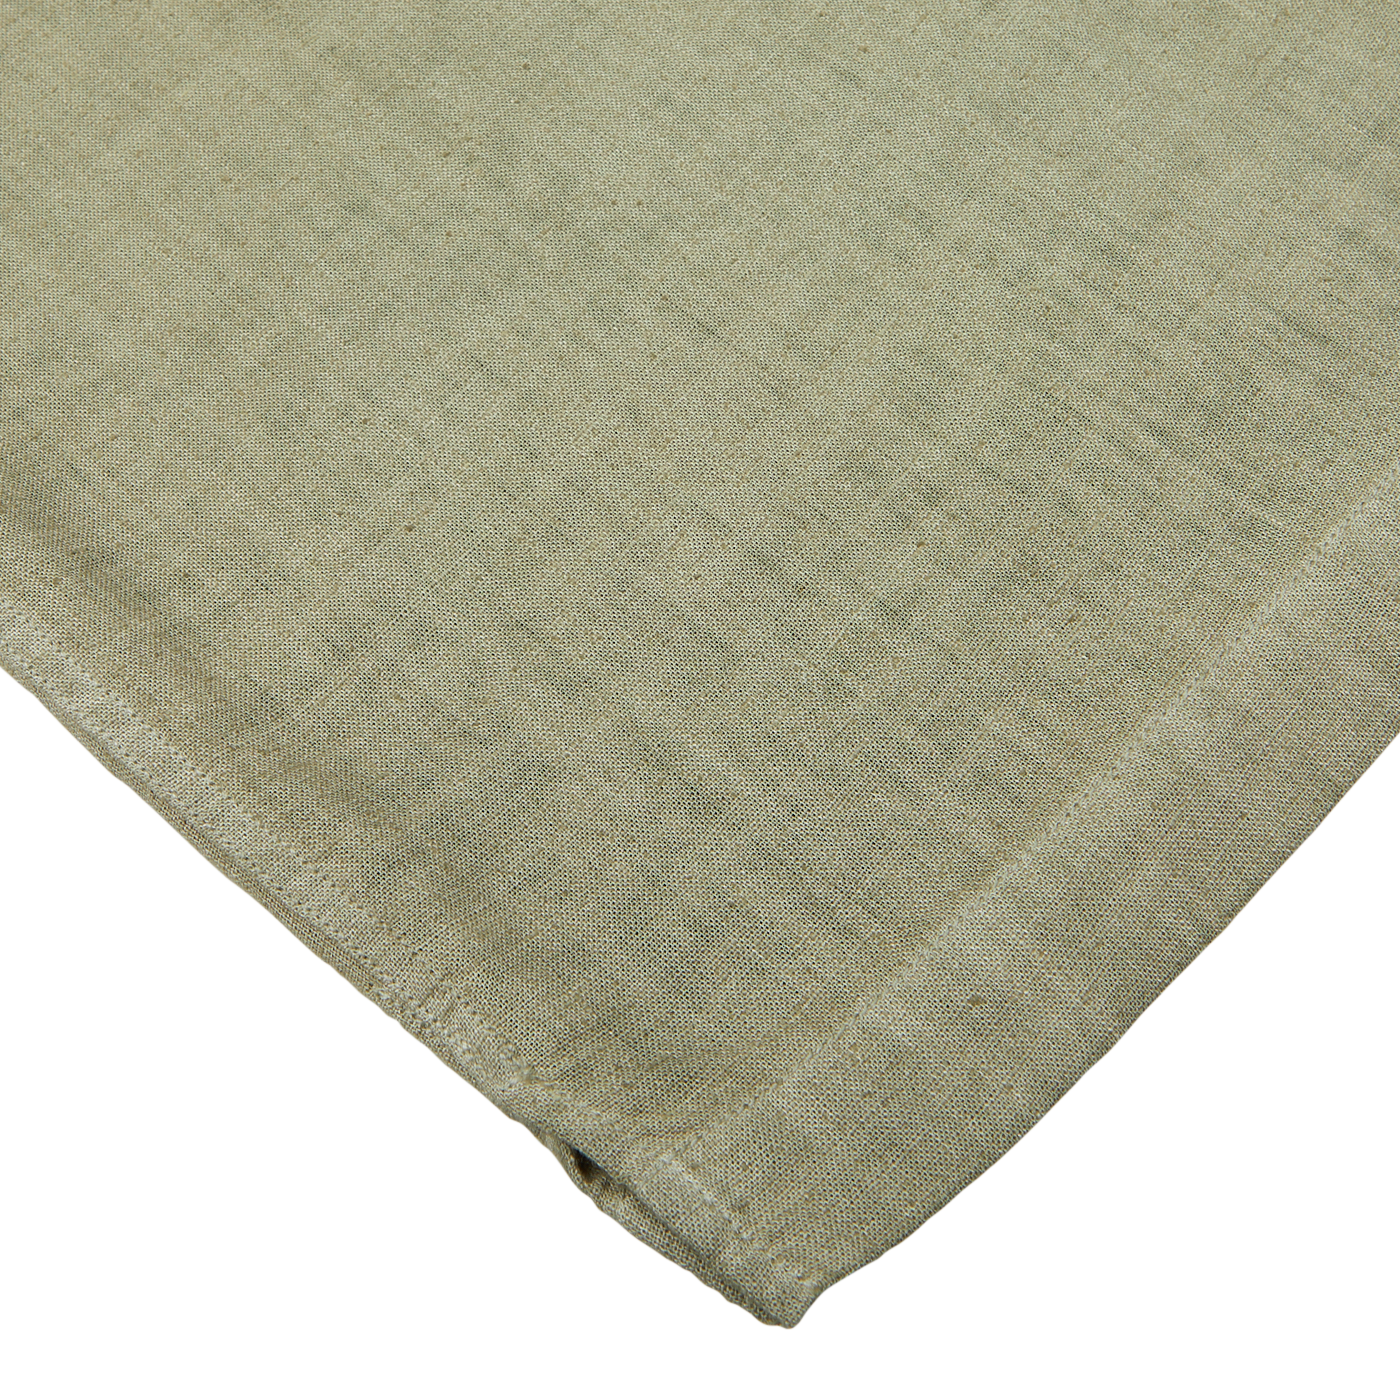 Close-up of a textured Altea Moss Green Linen Blend Camp Collar Shirt with a folded corner.